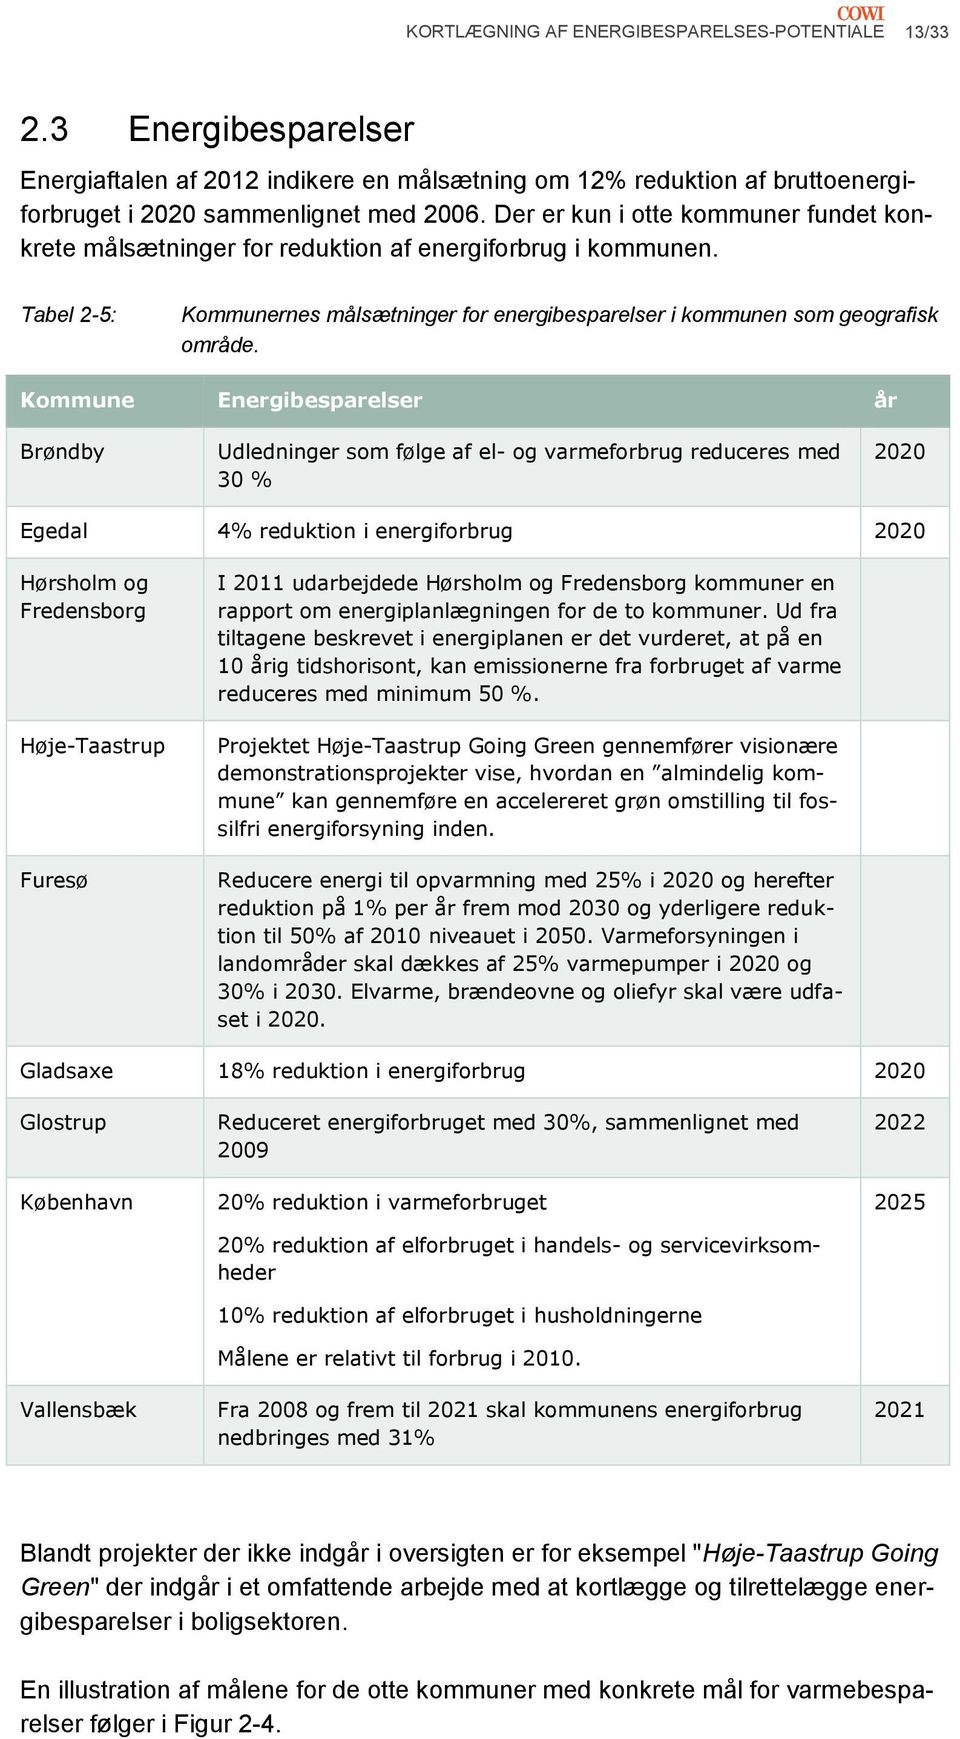 Kommune Energibesparelser år Brøndby Udledninger som følge af el- og varmeforbrug reduceres med 30 % 2020 Egedal 4% reduktion i energiforbrug 2020 Hørsholm og Fredensborg Høje-Taastrup Furesø I 2011